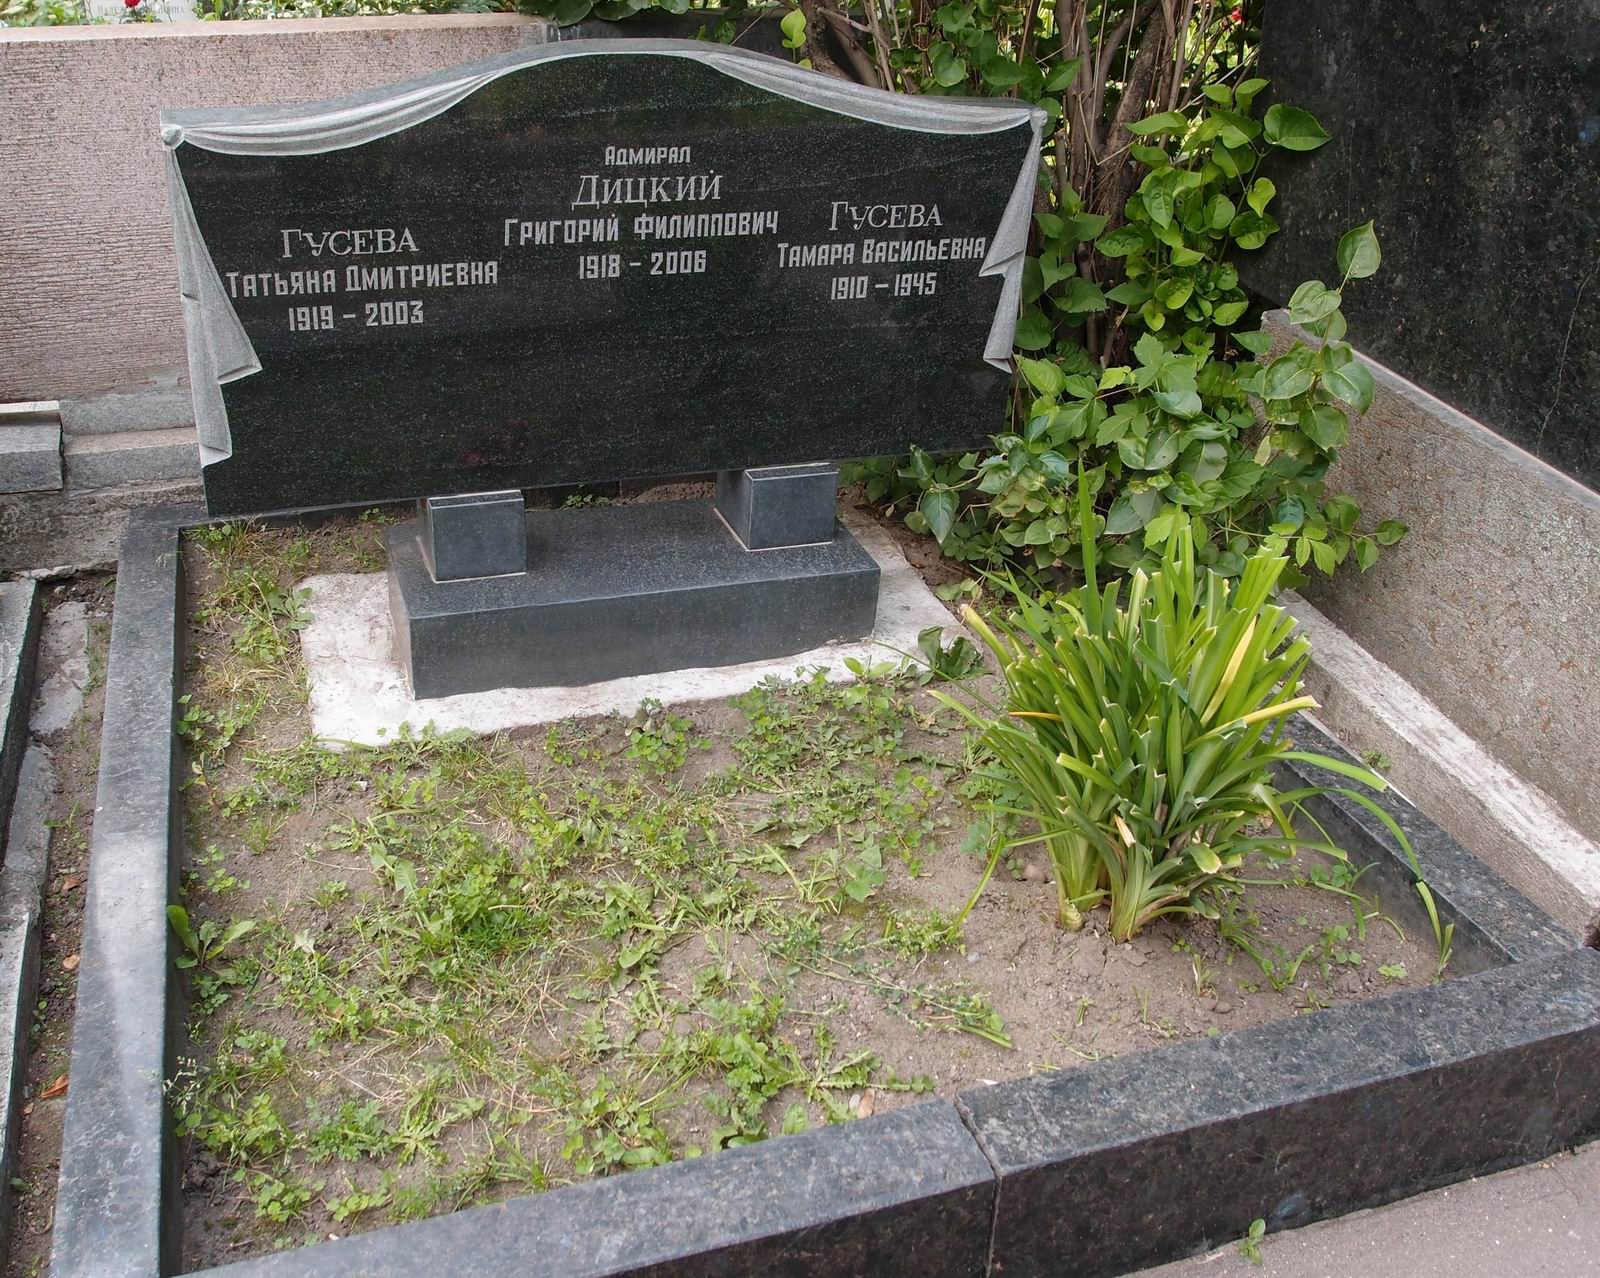 Памятник на могиле Дицкого Г.Ф. (1918-2006), на Новодевичьем кладбище (4-9-8).